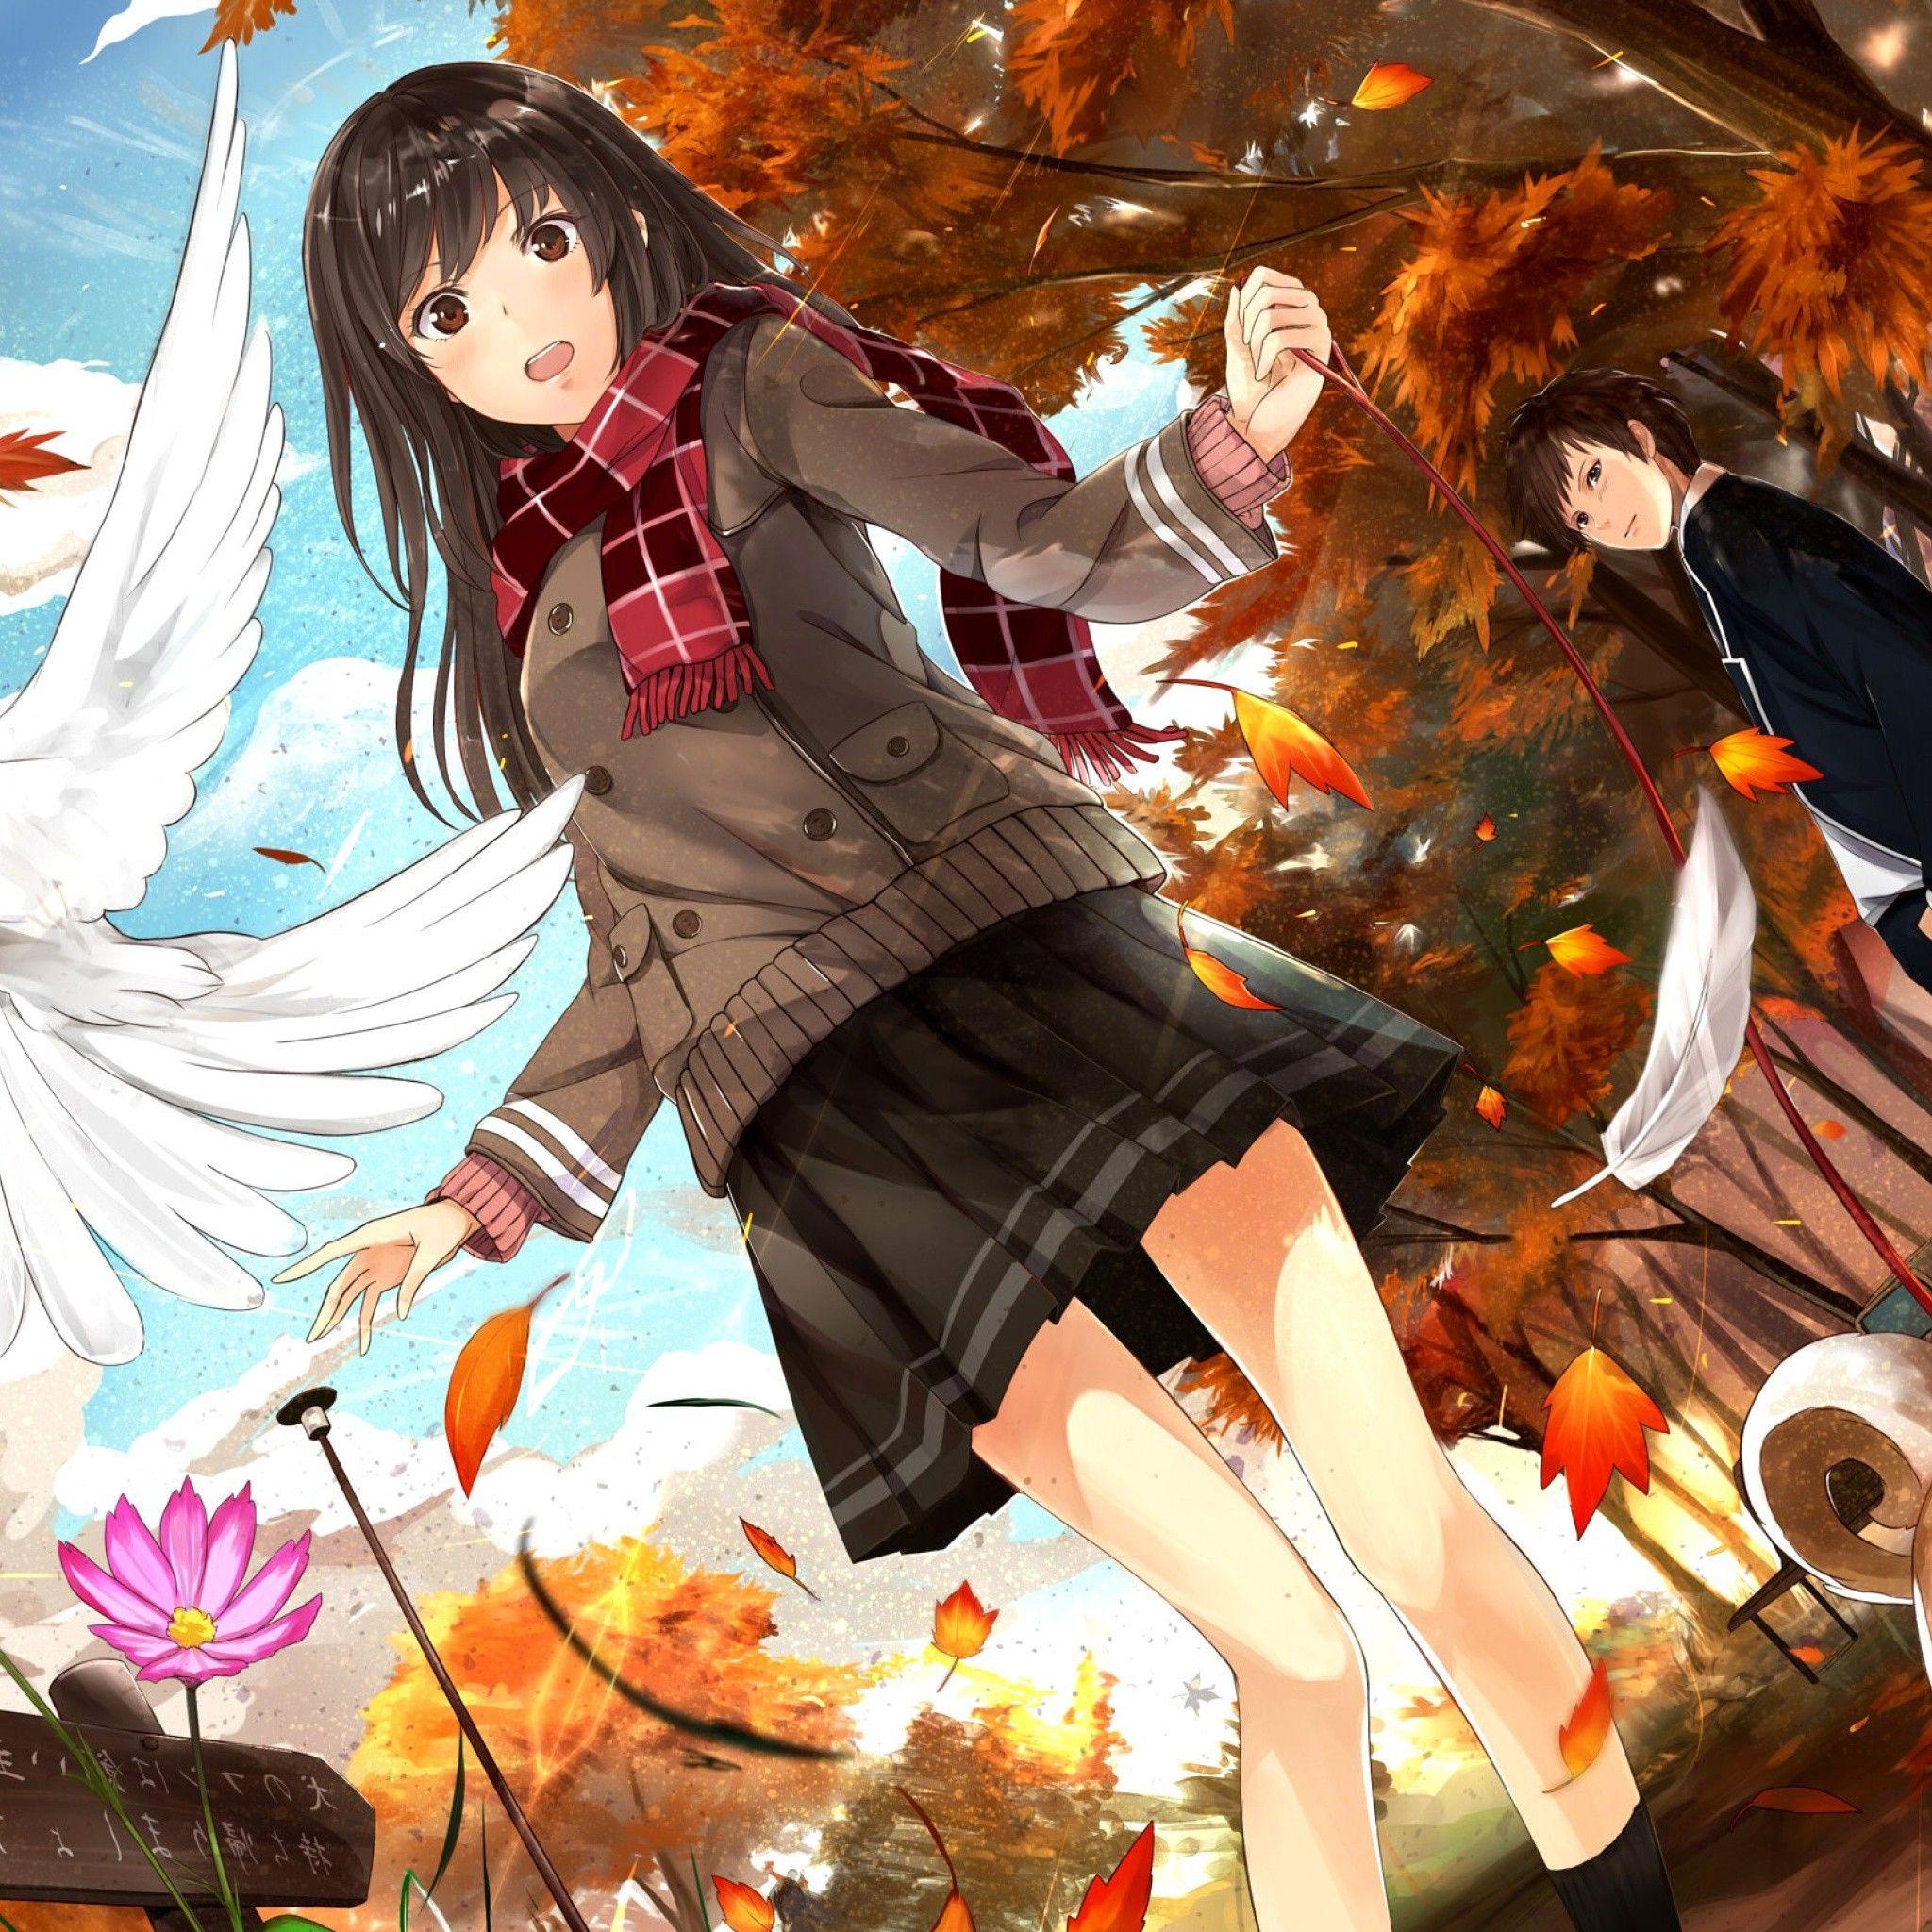 Kazabana Fuuka to see more Thanksgiving Anime